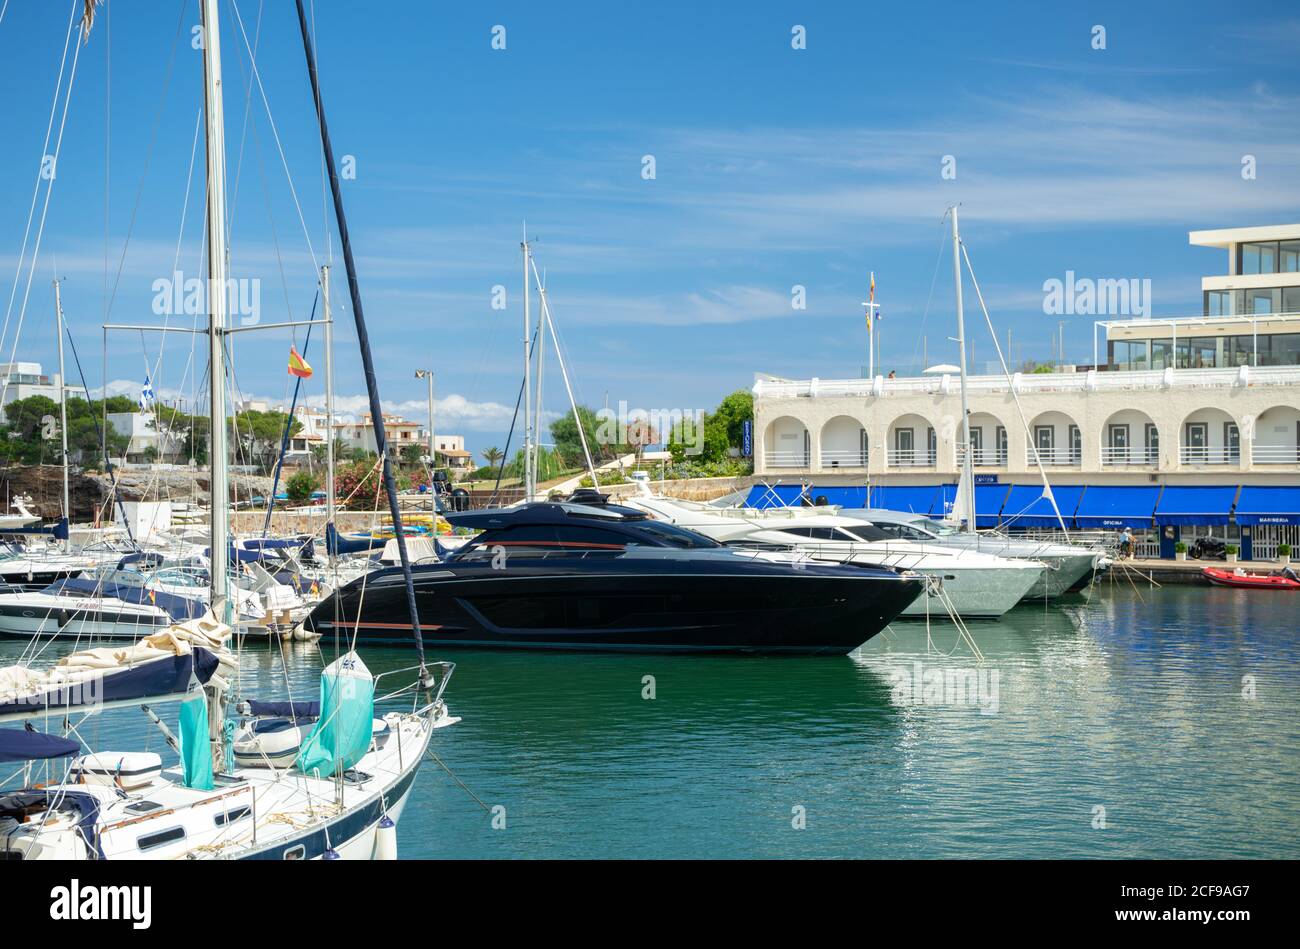 MALLORCA, SPAGNA - 17 luglio 2020: Mallorca, Spagna - 17 LUGLIO 2020. Porto Cristo, chiamato anche Port de Manacor o es Port, è un bel posto sulla lingua spagnola Foto Stock